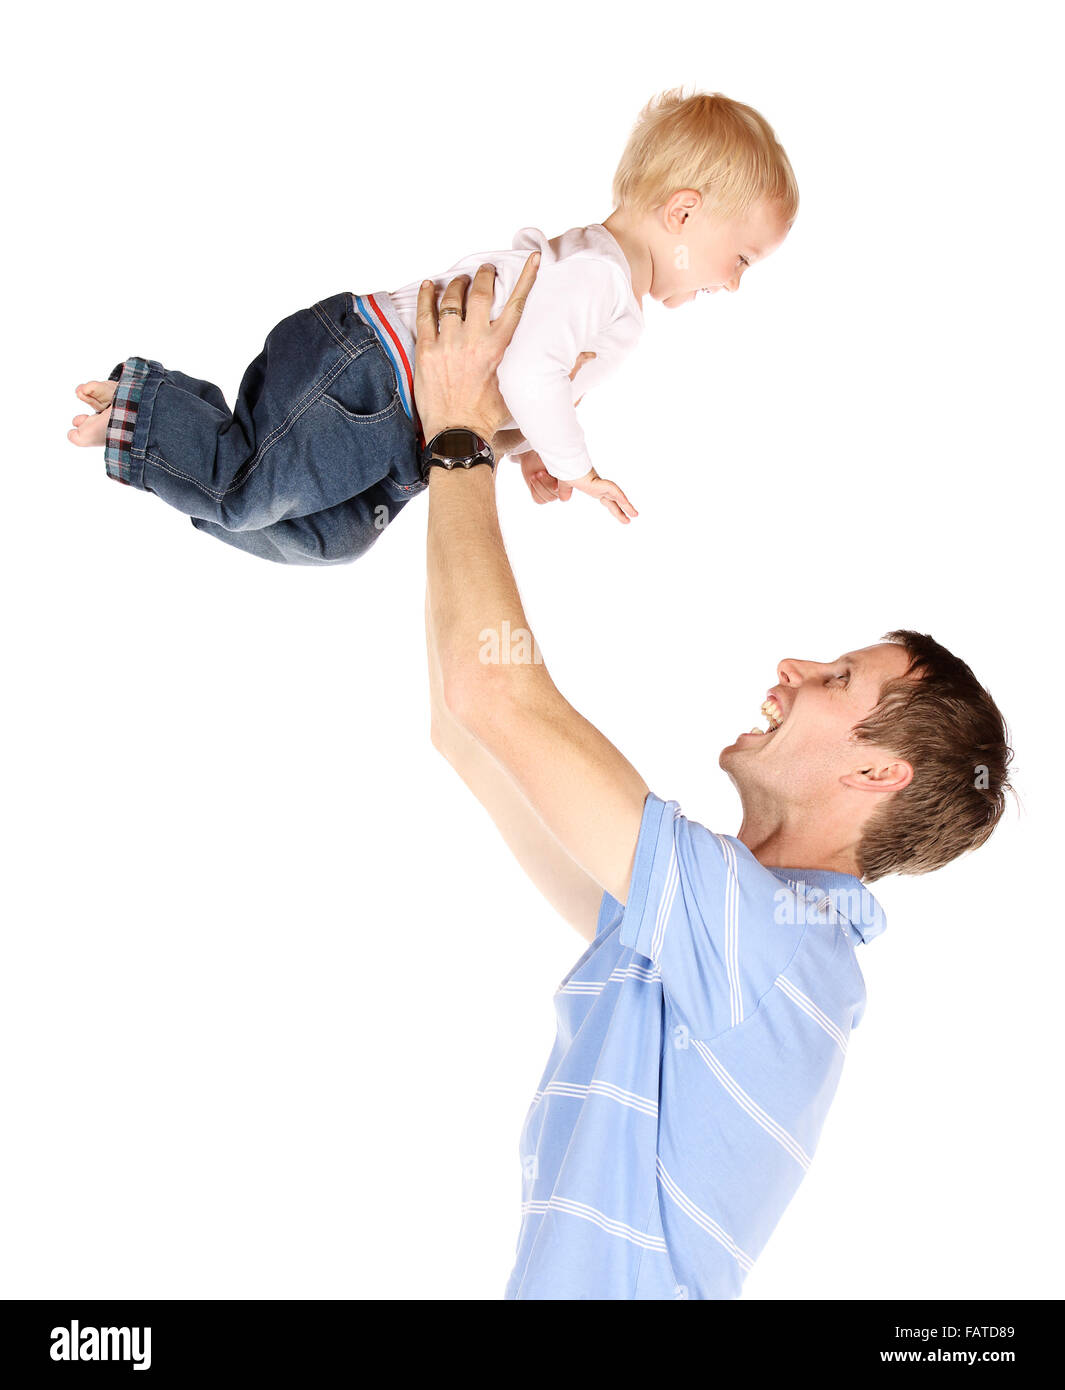 Feliz papá caucásica sosteniendo a su bebé. Imagen está aislado en un fondo blanco. Foto de stock